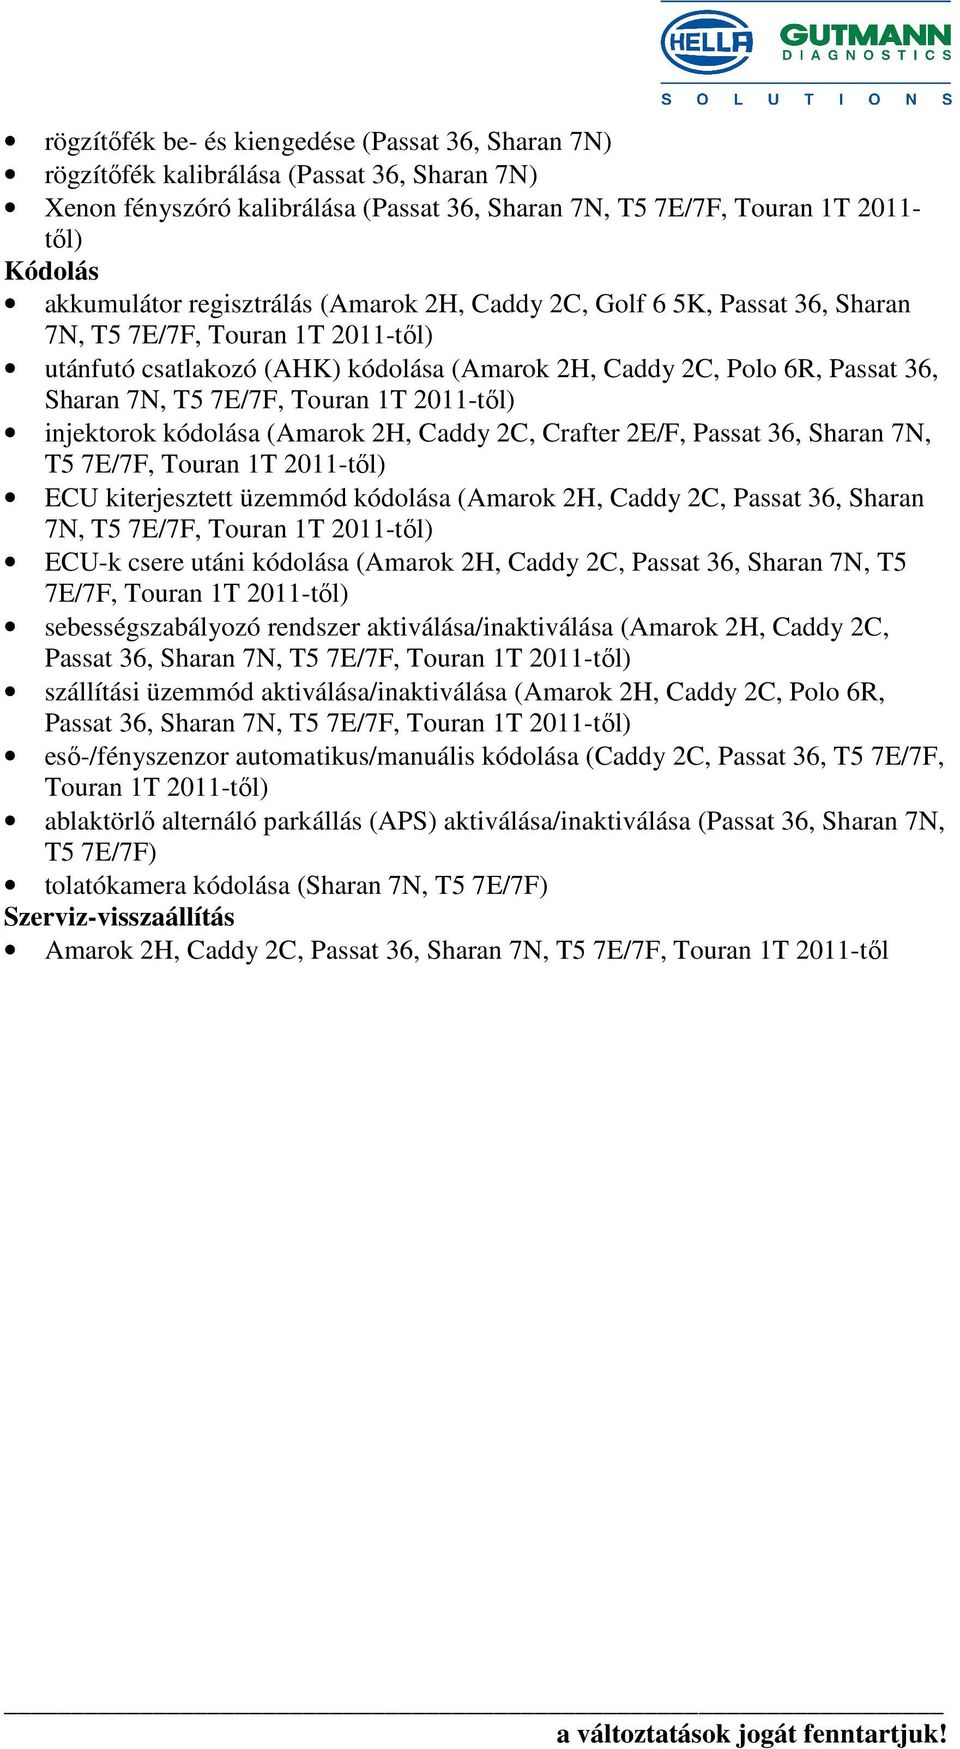 Touran 1T 2011-től) injektorok kódolása (Amarok 2H, Caddy 2C, Crafter 2E/F, Passat 36, Sharan 7N, T5 7E/7F, Touran 1T 2011-től) ECU kiterjesztett üzemmód kódolása (Amarok 2H, Caddy 2C, Passat 36,